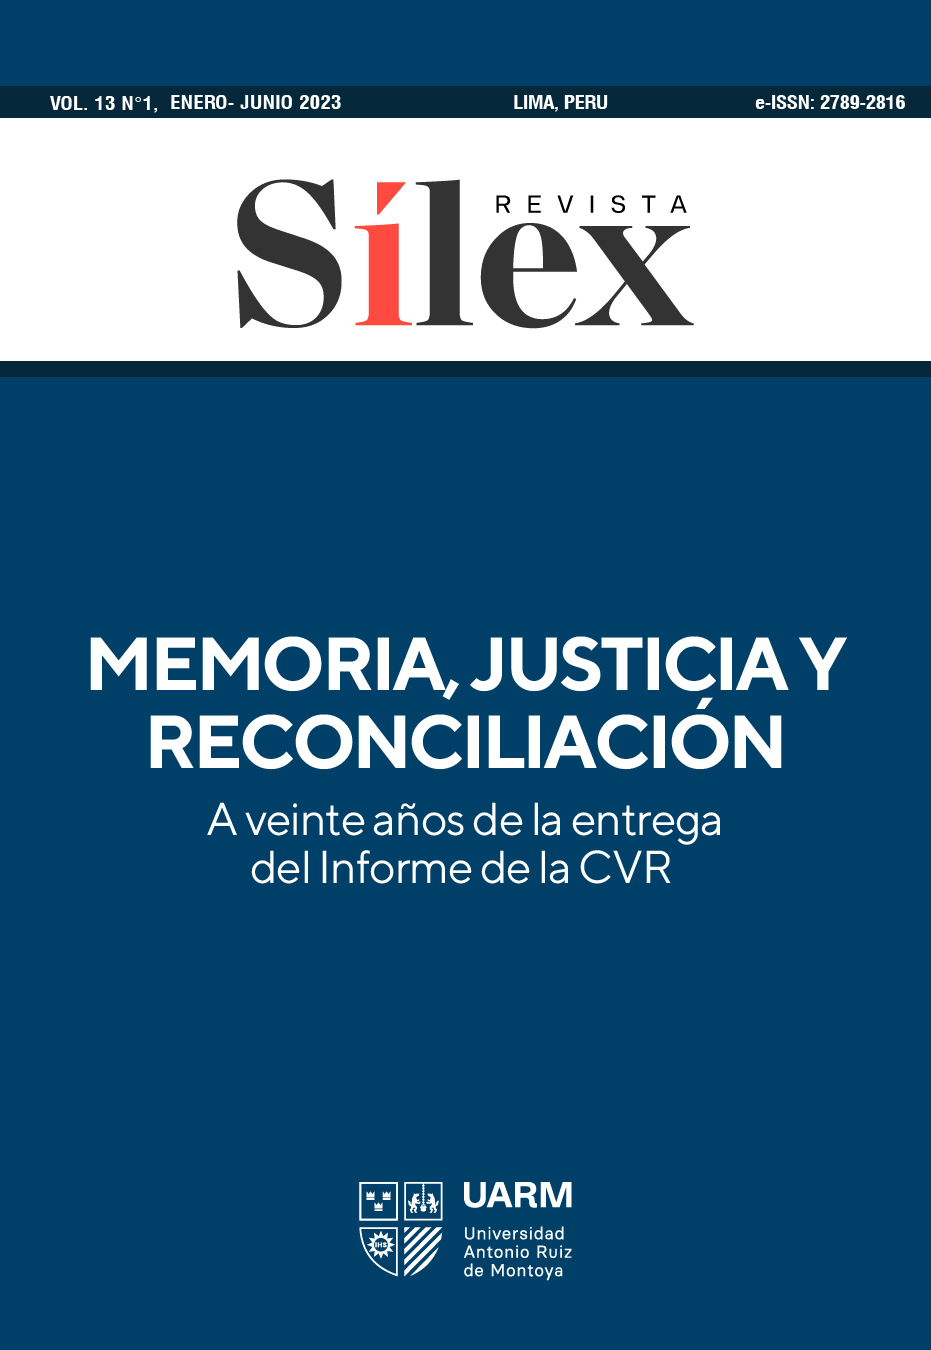 Memoria, justicia y reconciliación. A veinte años de la entrega del Informe de la CVR